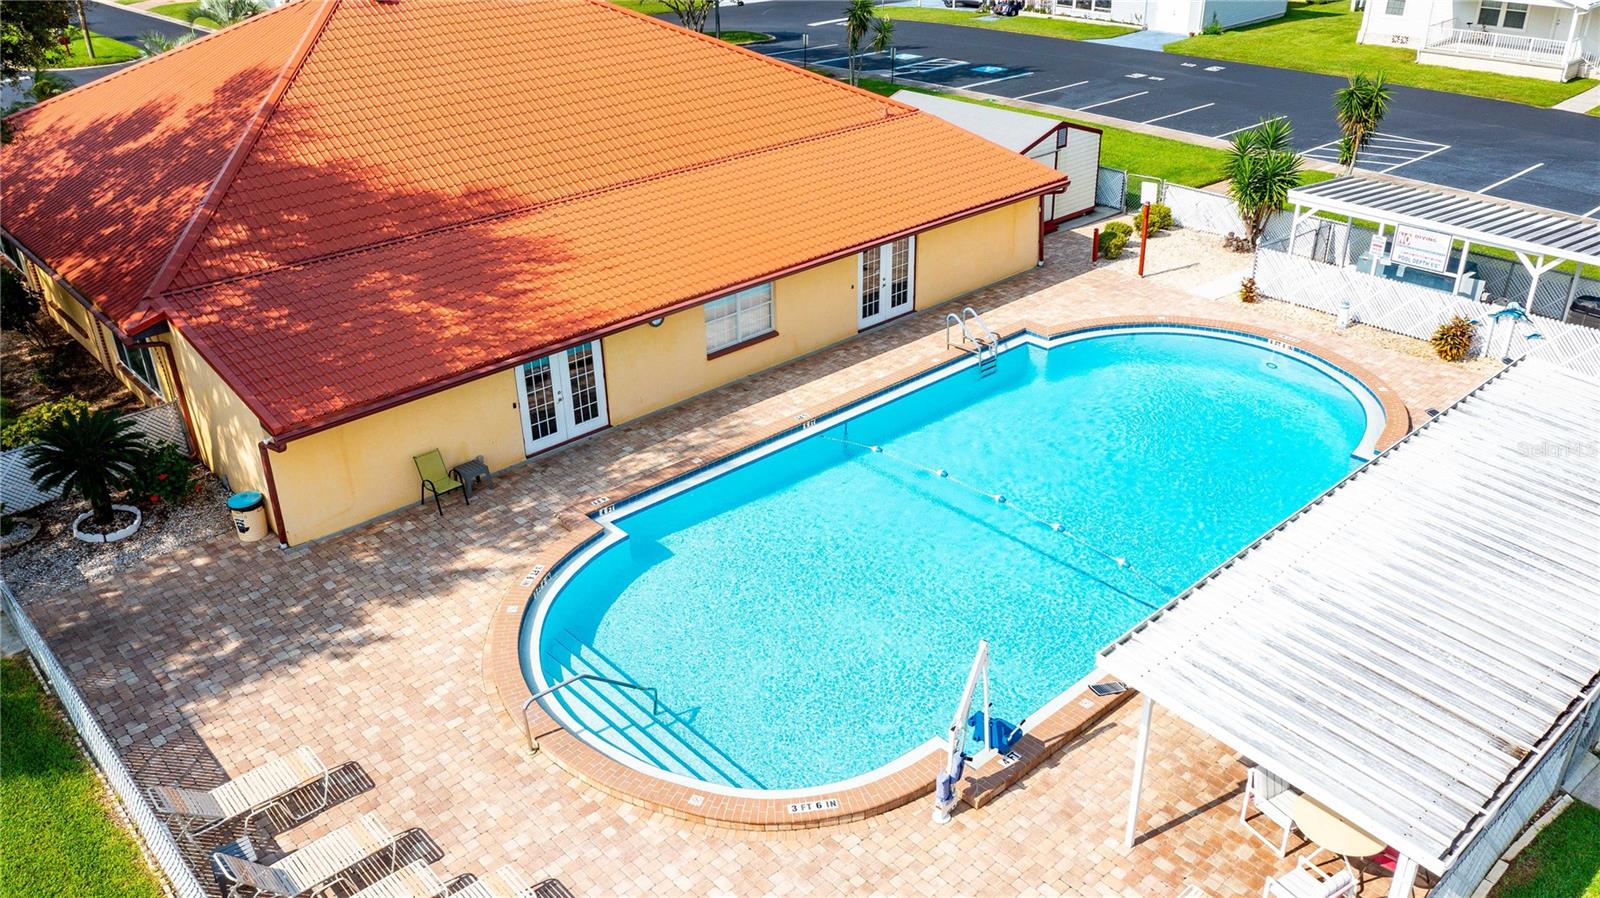 Wonderful pool area for enjoying the Florida sunshine.